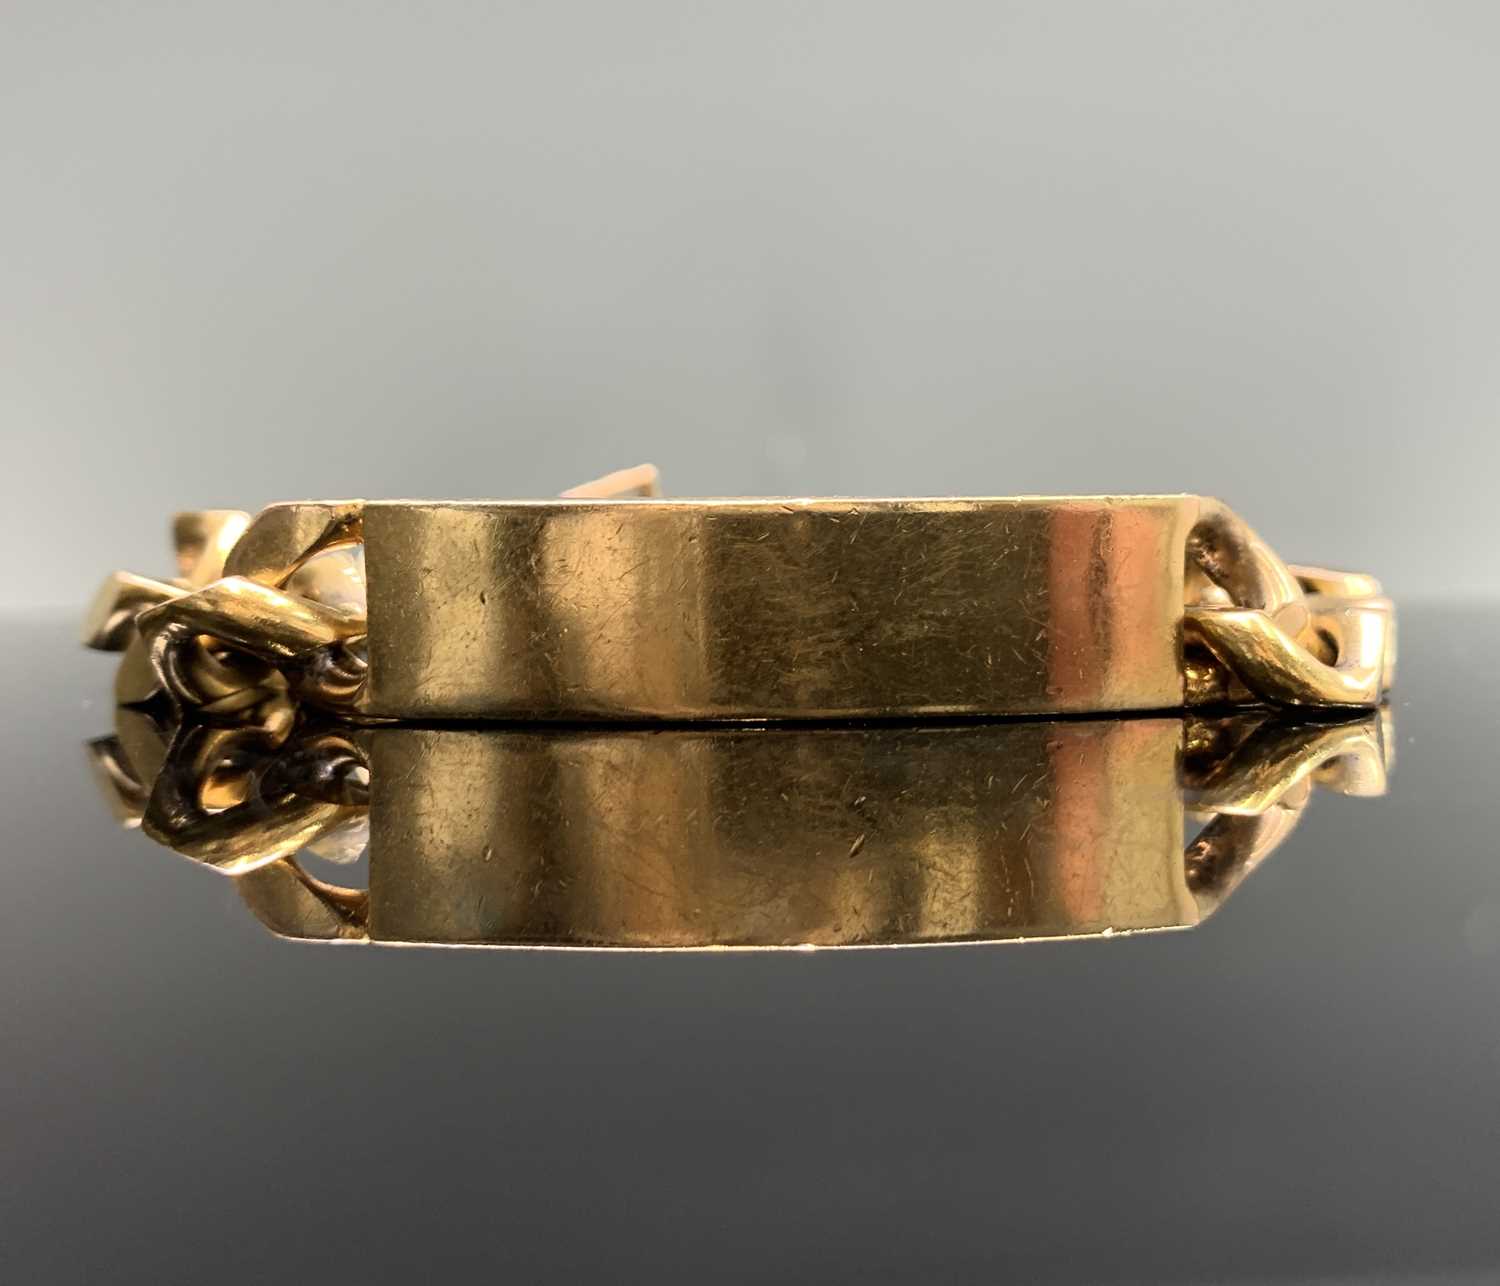 Lot 436 - A 9ct gold identity bracelet 75.4gm